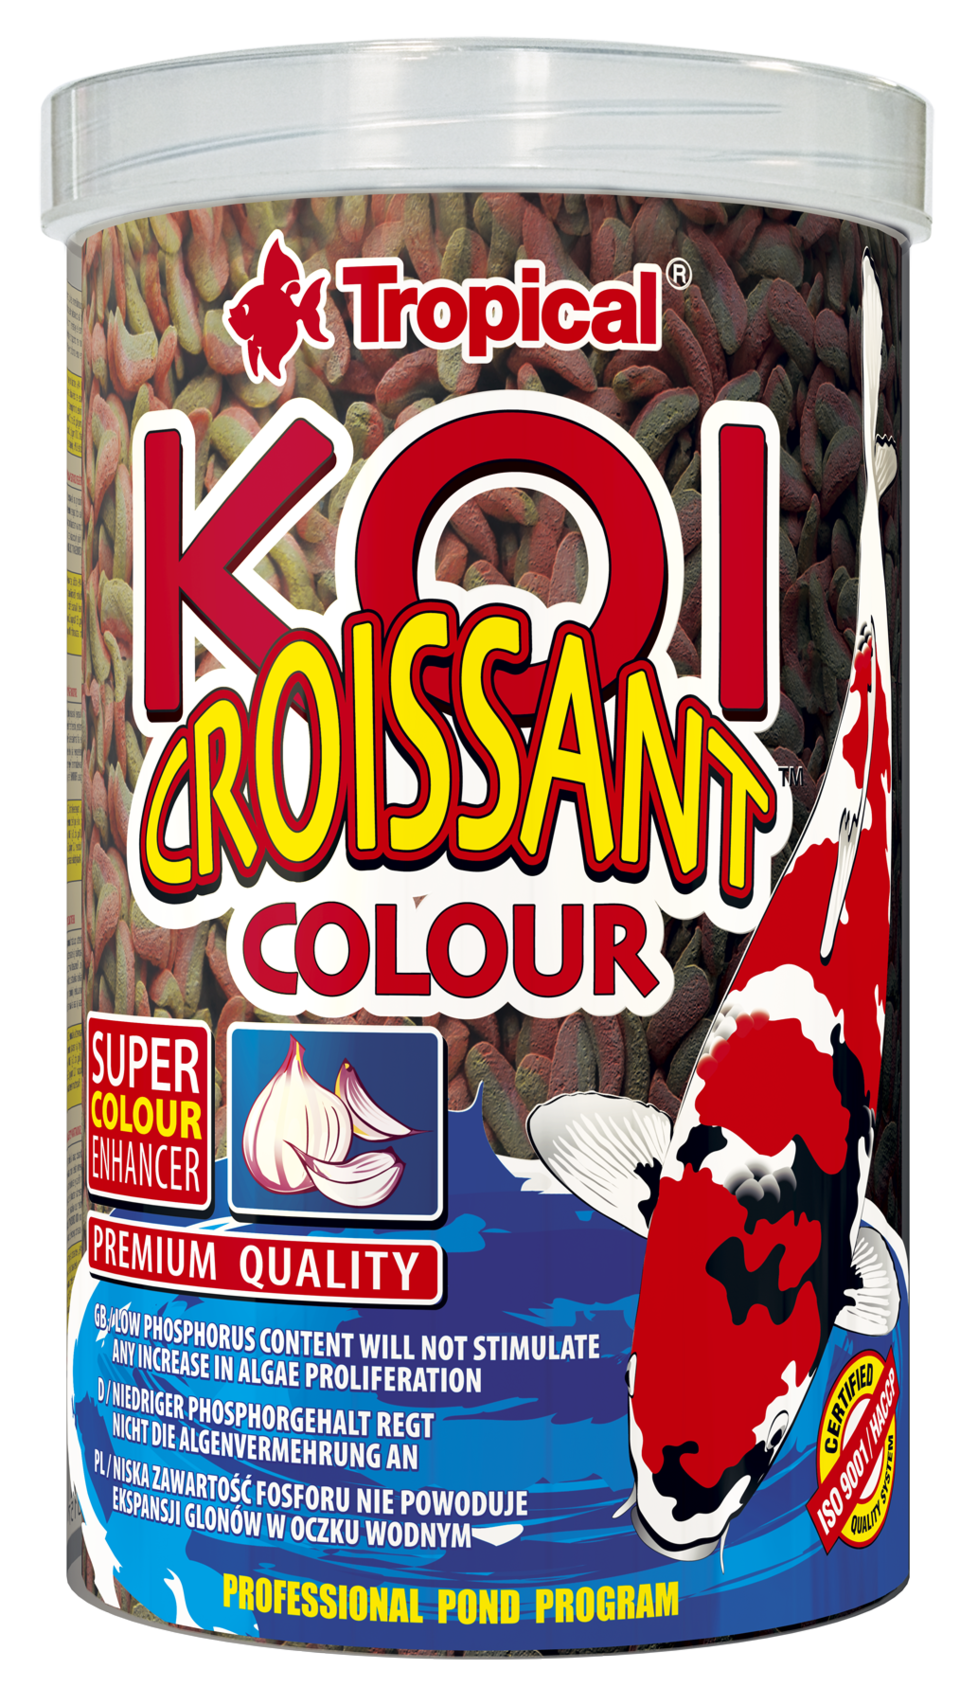 csm_koi-croissant-colour_1000_84ff1d4c4b